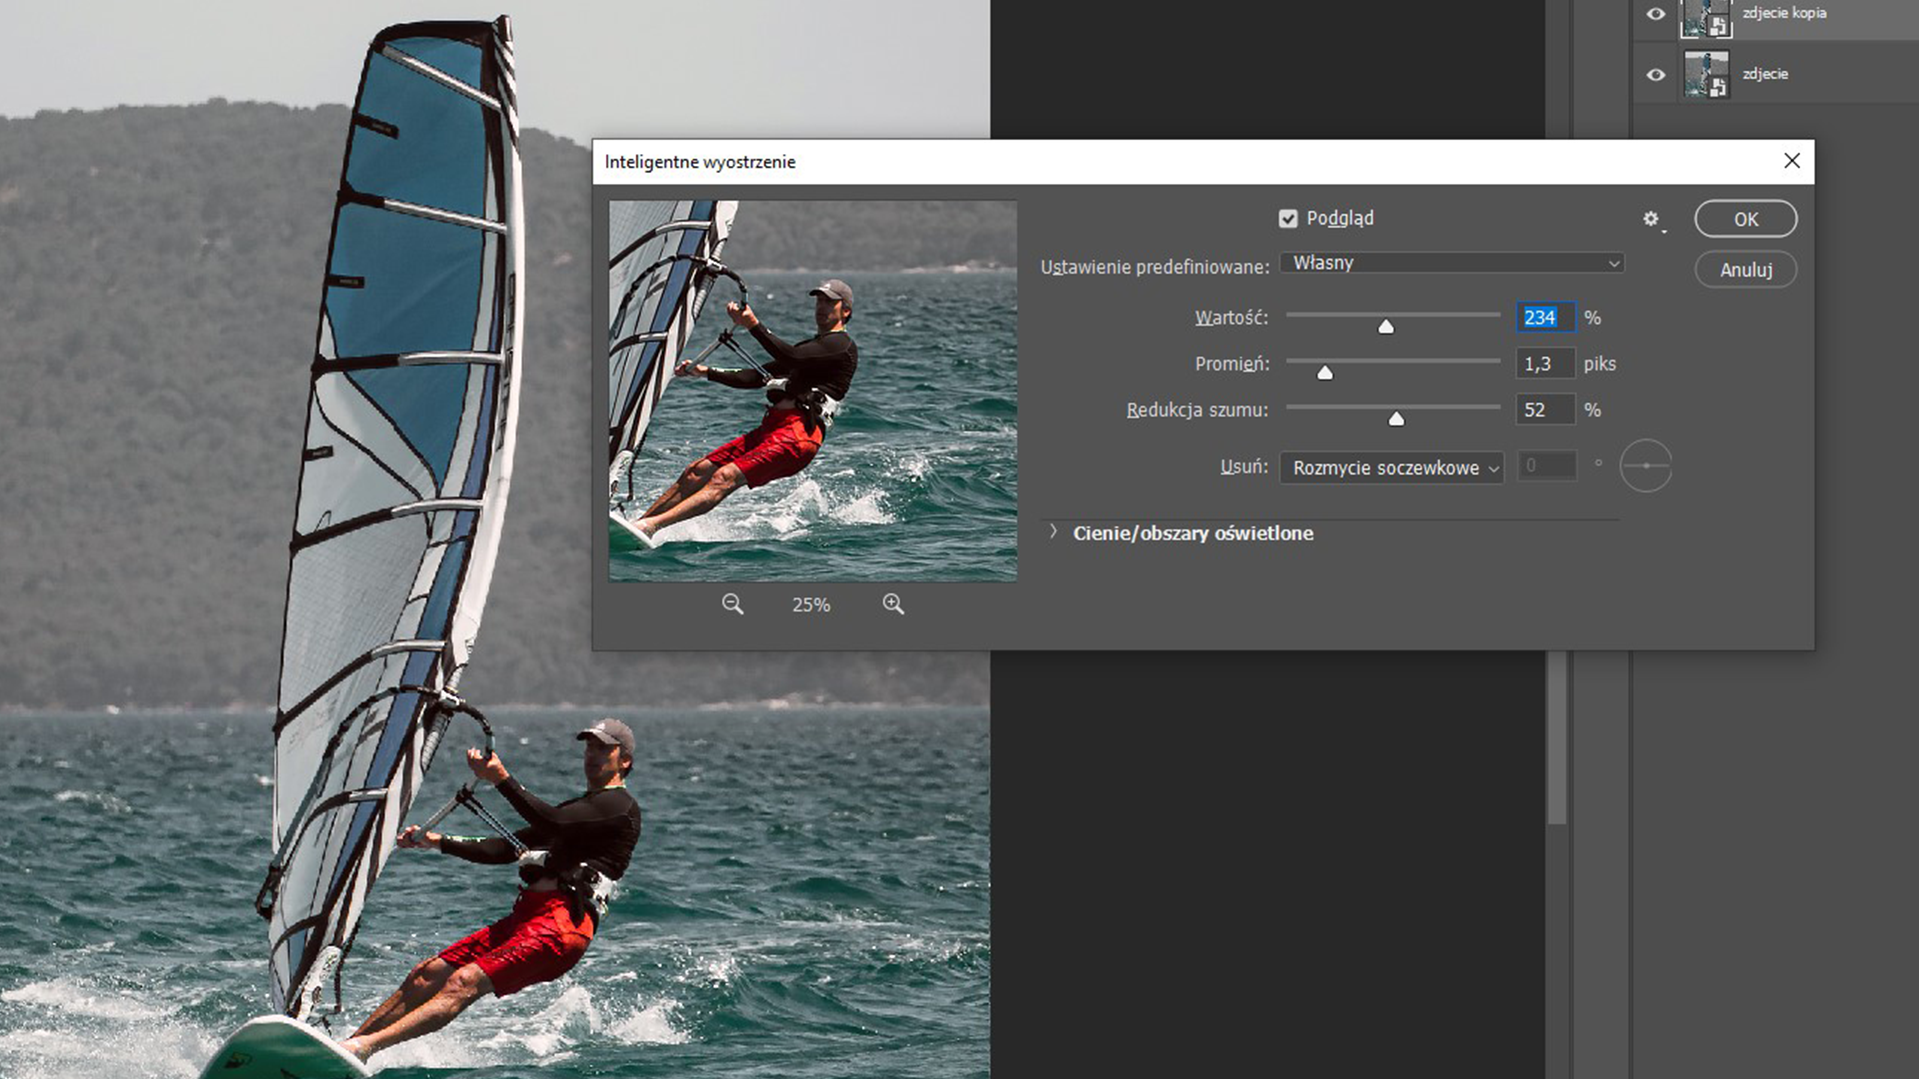 Ilustracja przedstawia okno programu. W obszarze roboczym jest zdjęcie mężczyzny na windsurfingu. Po prawej stronie okno dialogowe o nazwie: Inteligentne wyostrzenie. Zaznaczono: Podgląd, Ustawienia predefiniowane: Własne, Wartość 234%, Promień 1,3 piksela, Redukcja szumu: 52%, Usuń: Rozmycie soczewkowe. Wybrano przycisk: OK. 